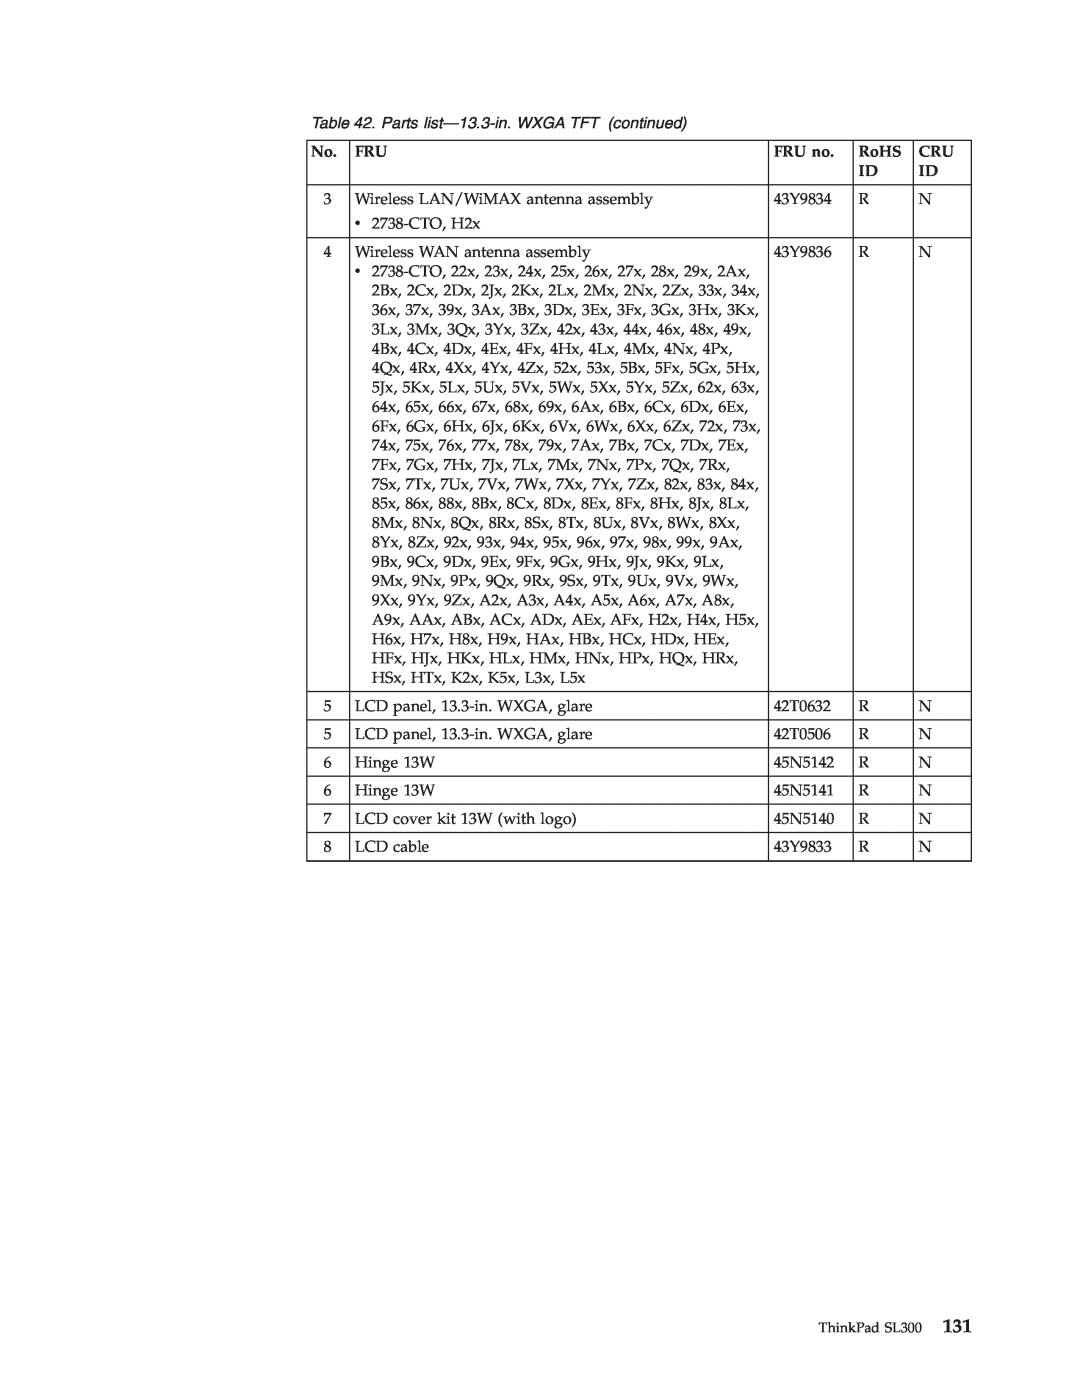 Lenovo SL300 manual Parts list-13.3-in. WXGA TFT continued, FRU no, RoHS 